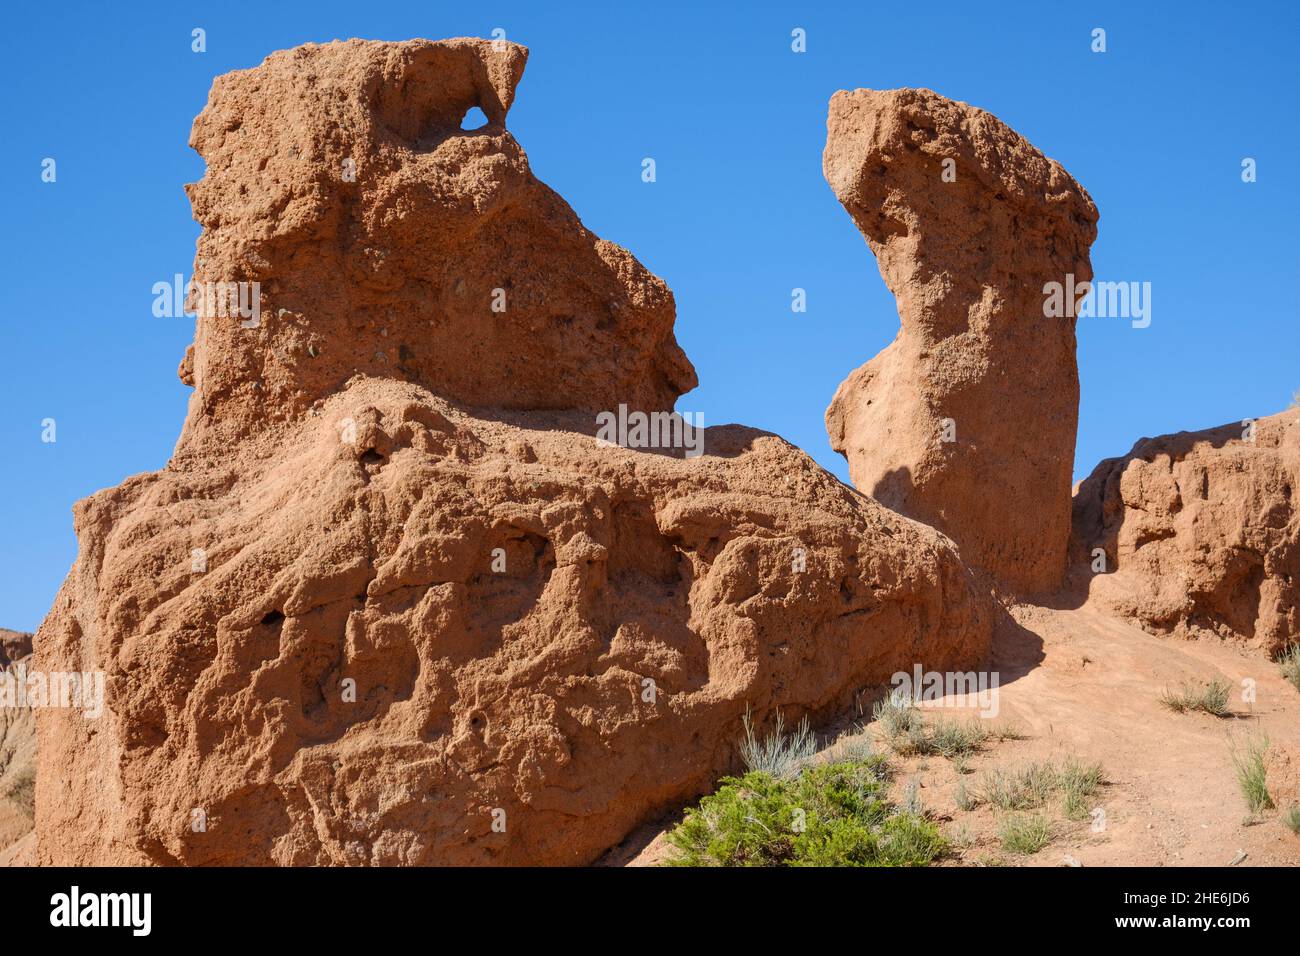 Sandsteinskulptur, die durch Erosion in der skazka Märchenschlucht nahe dem Issyk-Kul-See, Tosor, Kirgisistan gebildet wurde Stockfoto